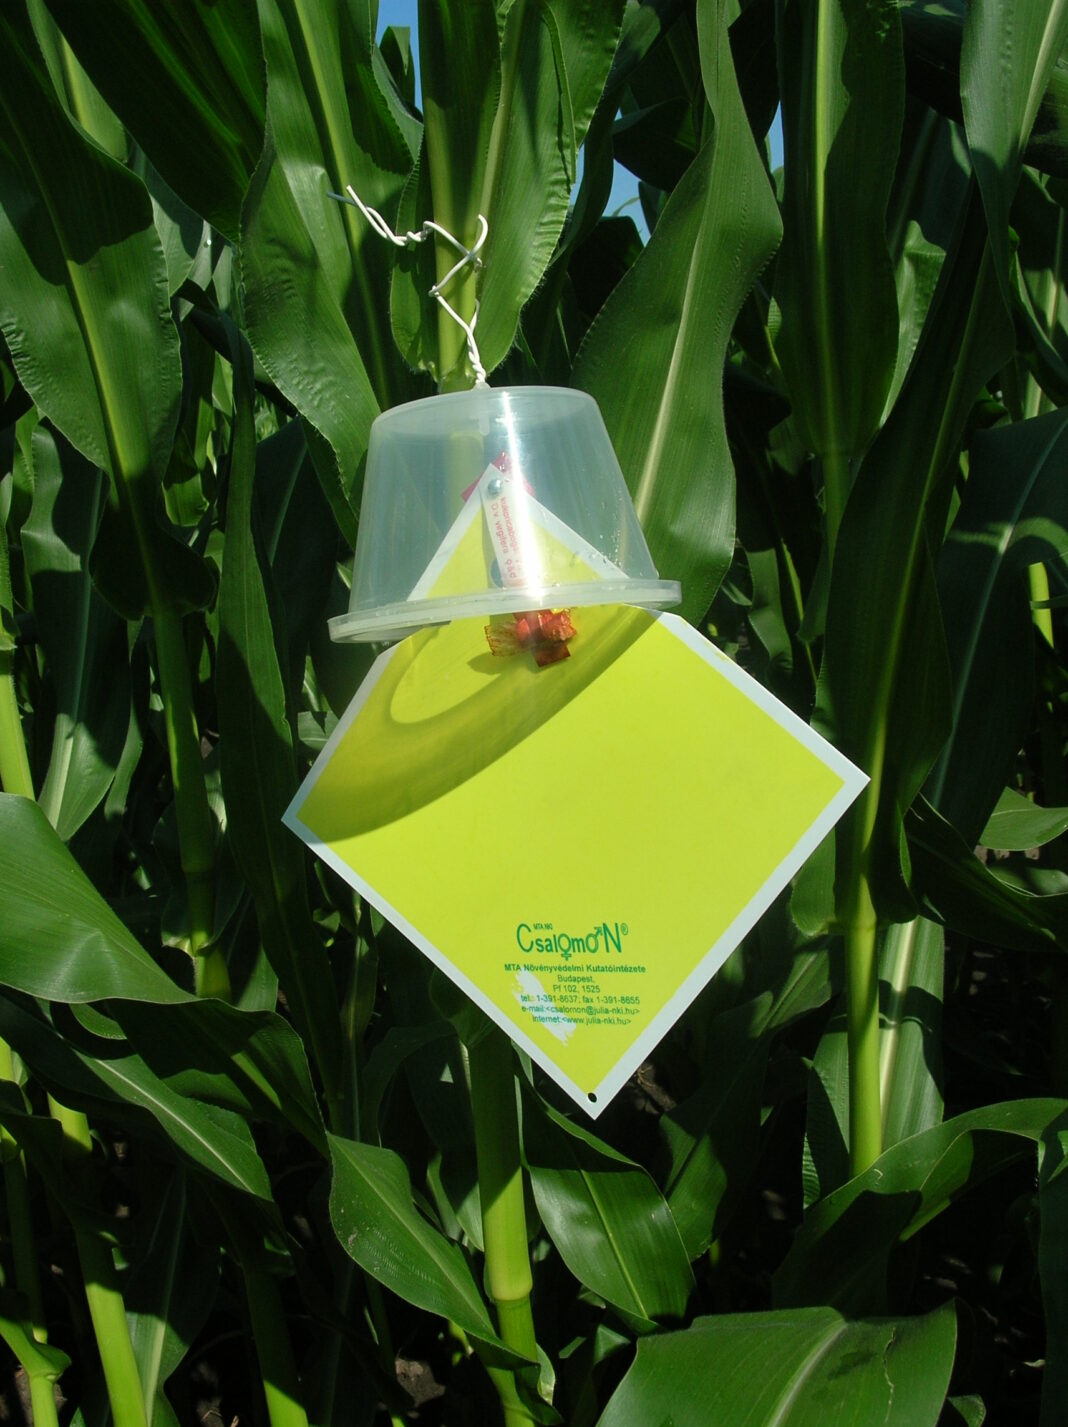 Pułapka kubełkowa z dyspenserem pokarmowym typu KLP do odłowu stonki kukurydzianej (fot. P. Bereś)